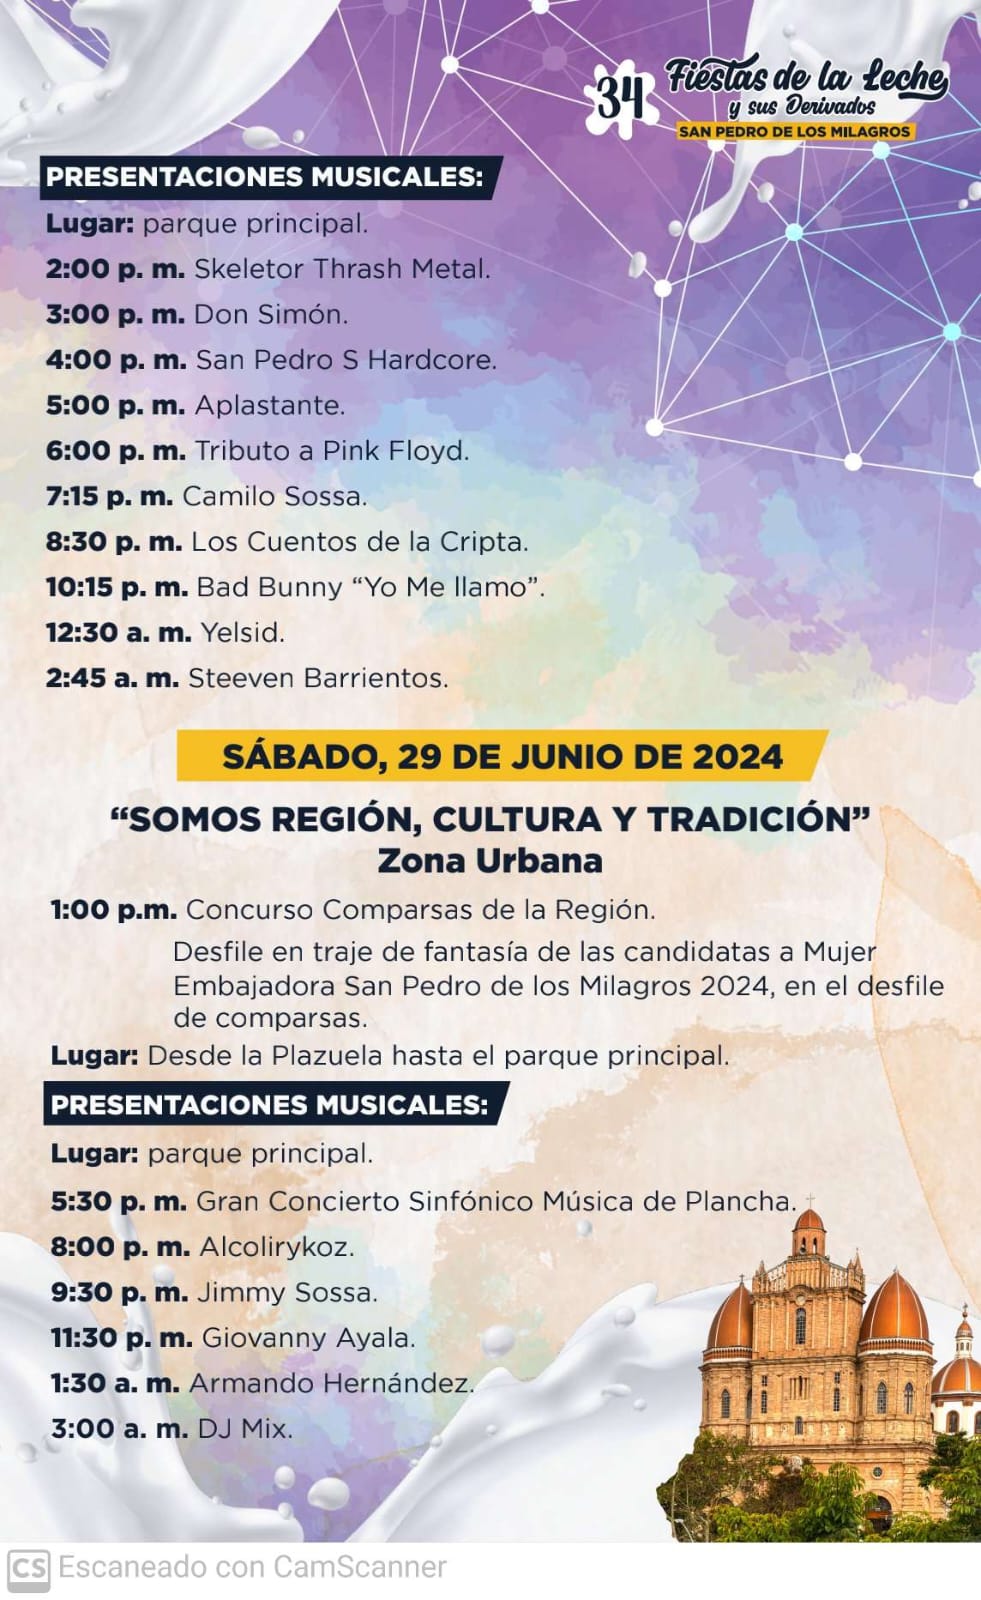 Fiestas de la Leche 2024 - San Pedro de los Milagros - Antioquia - 8